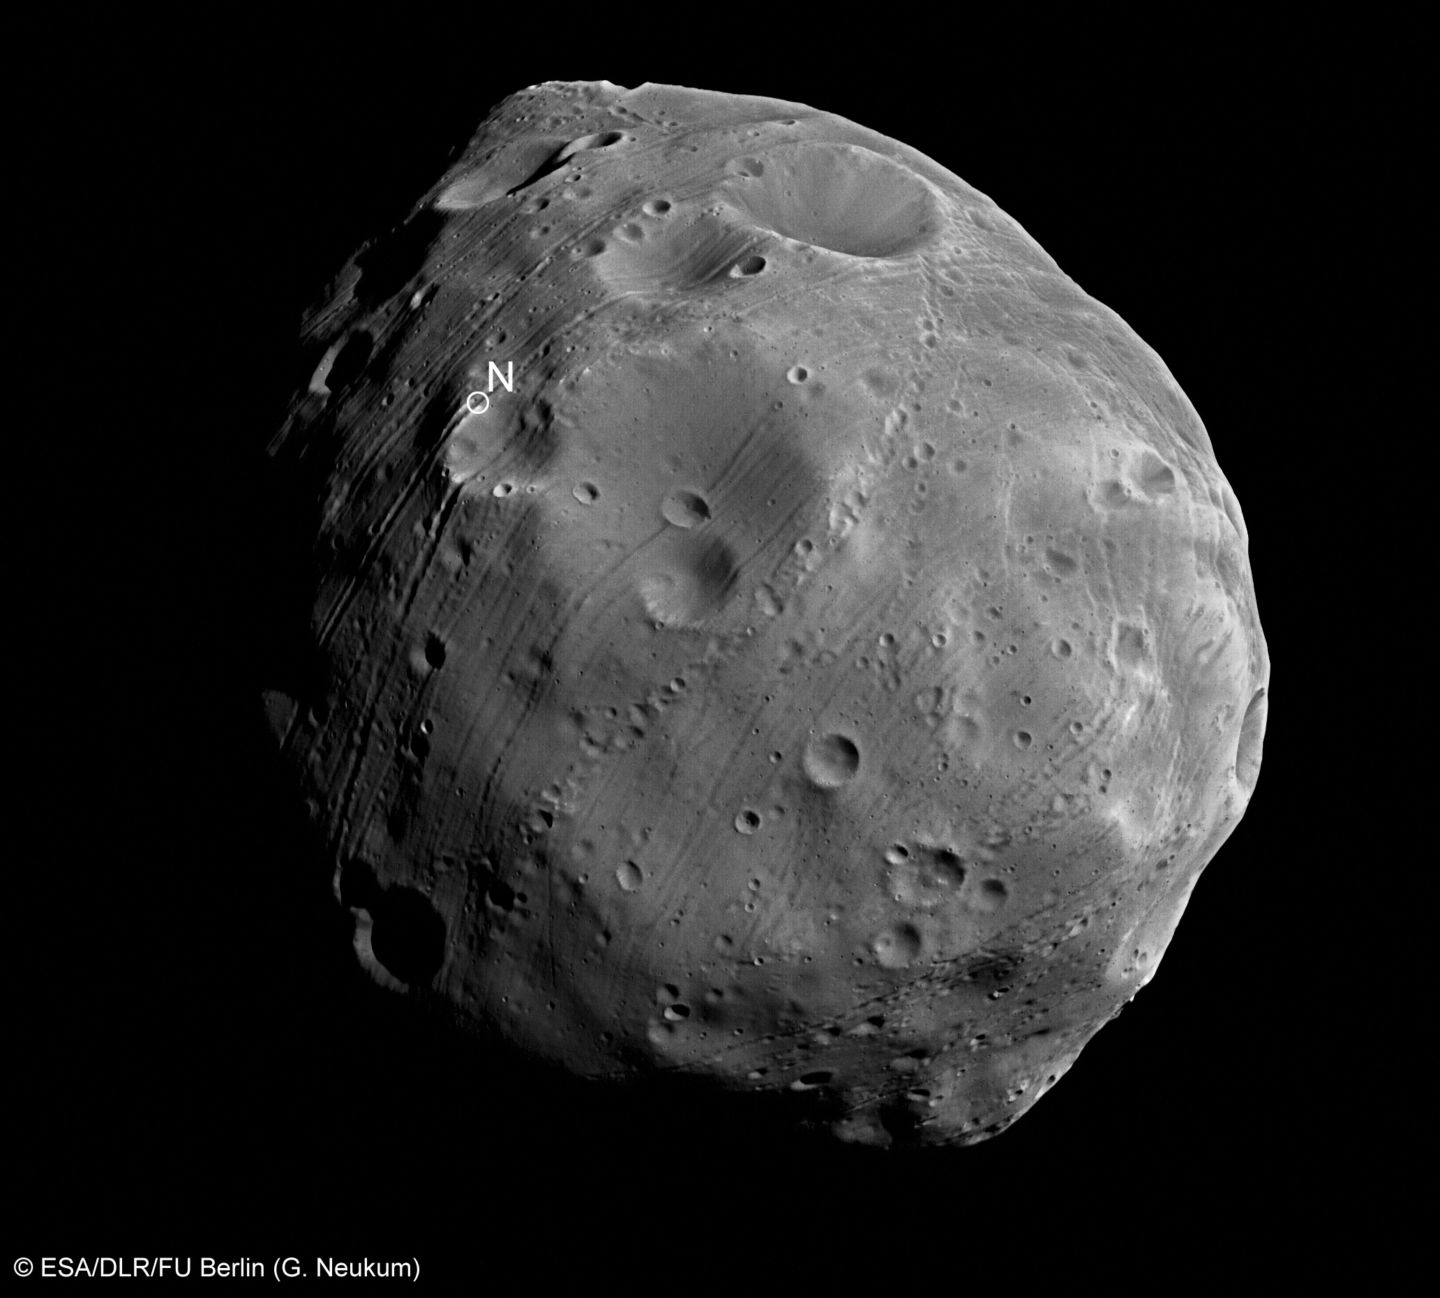 Una imagen de primer plano de la luna marciana Phobos.